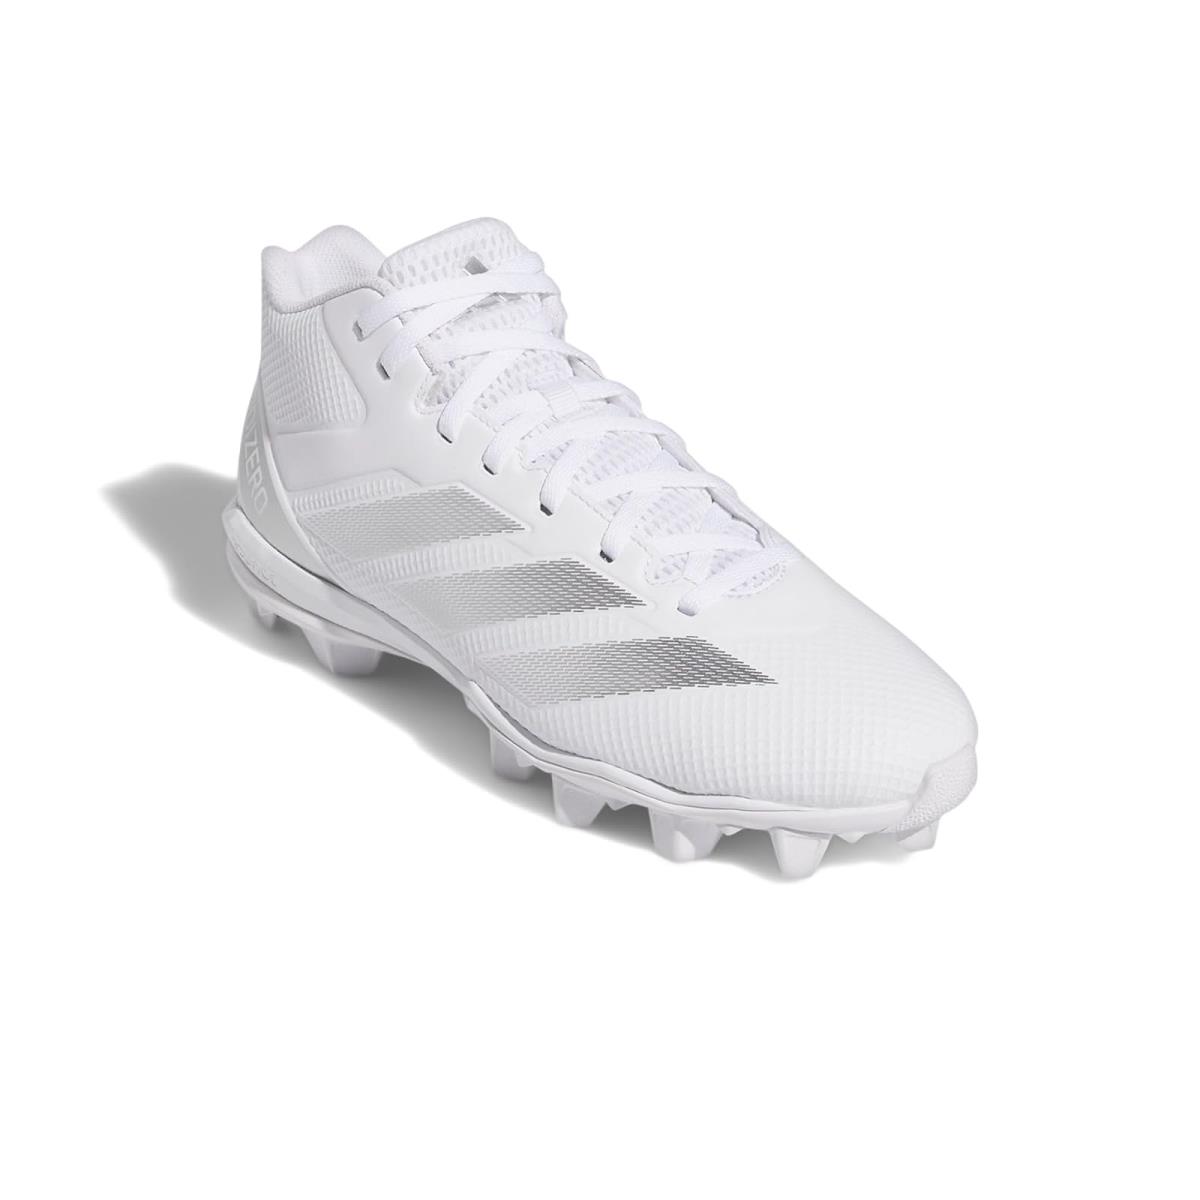 Man`s Sneakers Athletic Shoes Adidas Adizero Impact Spark Mid White/Silver Metallic/White